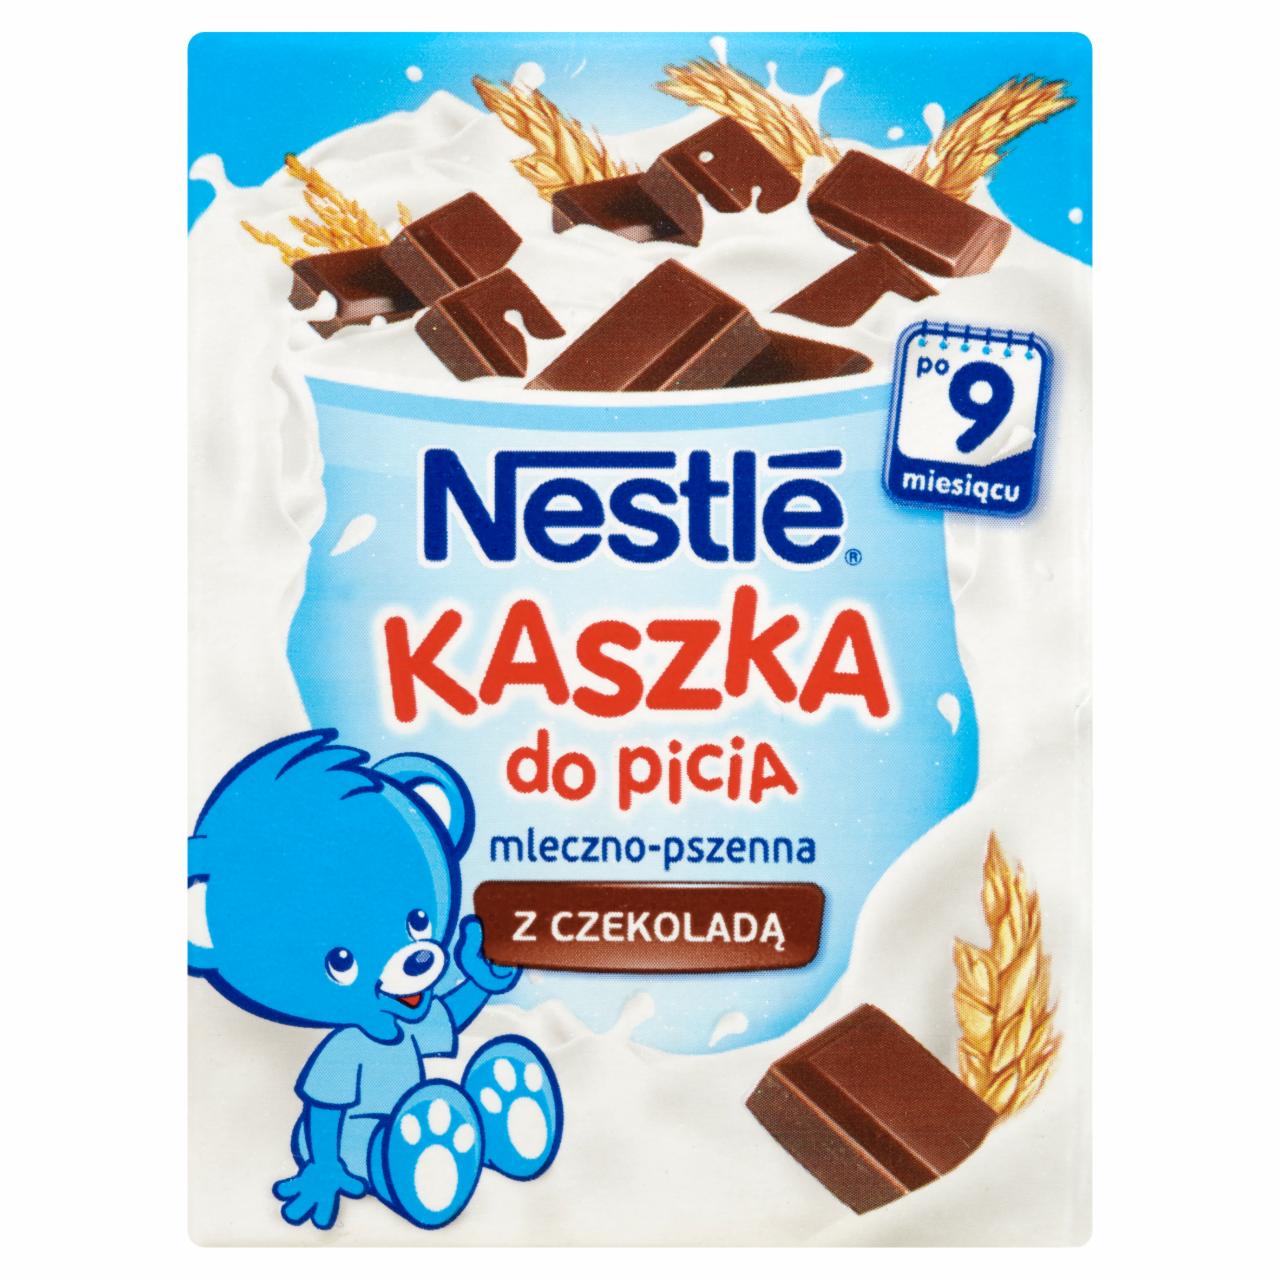 Zdjęcia - Nestlé Kaszka do picia mleczno-pszenna z czekoladą po 9 miesiącu 200 ml